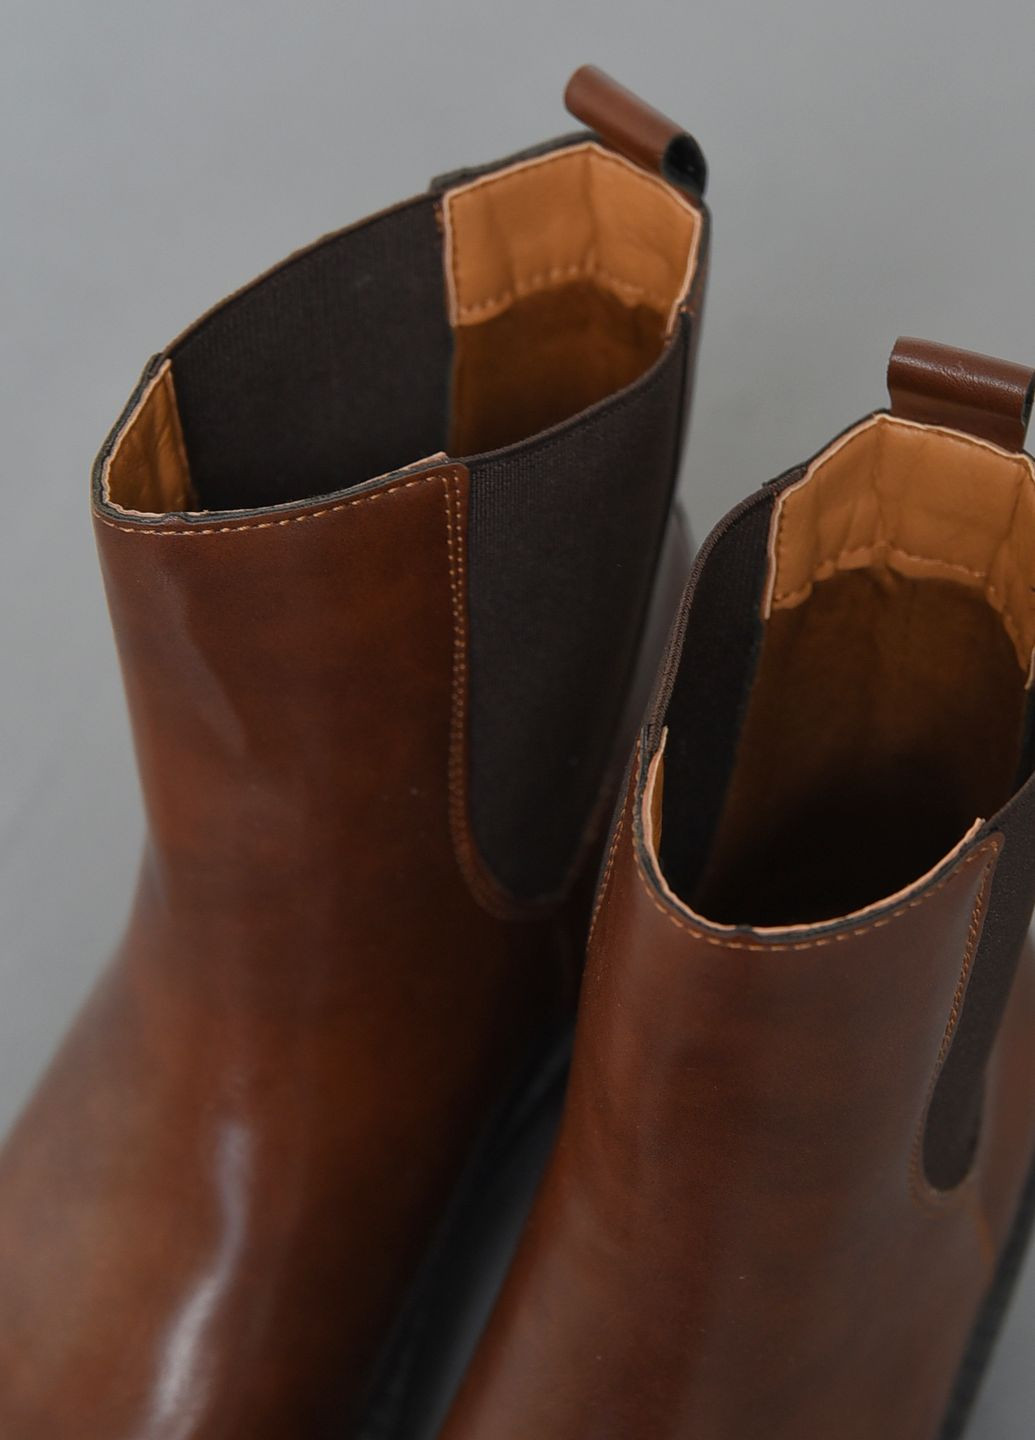 Осенние ботинки женские демисезонные коричневого цвета дезерты Let's Shop без декора из искусственной кожи